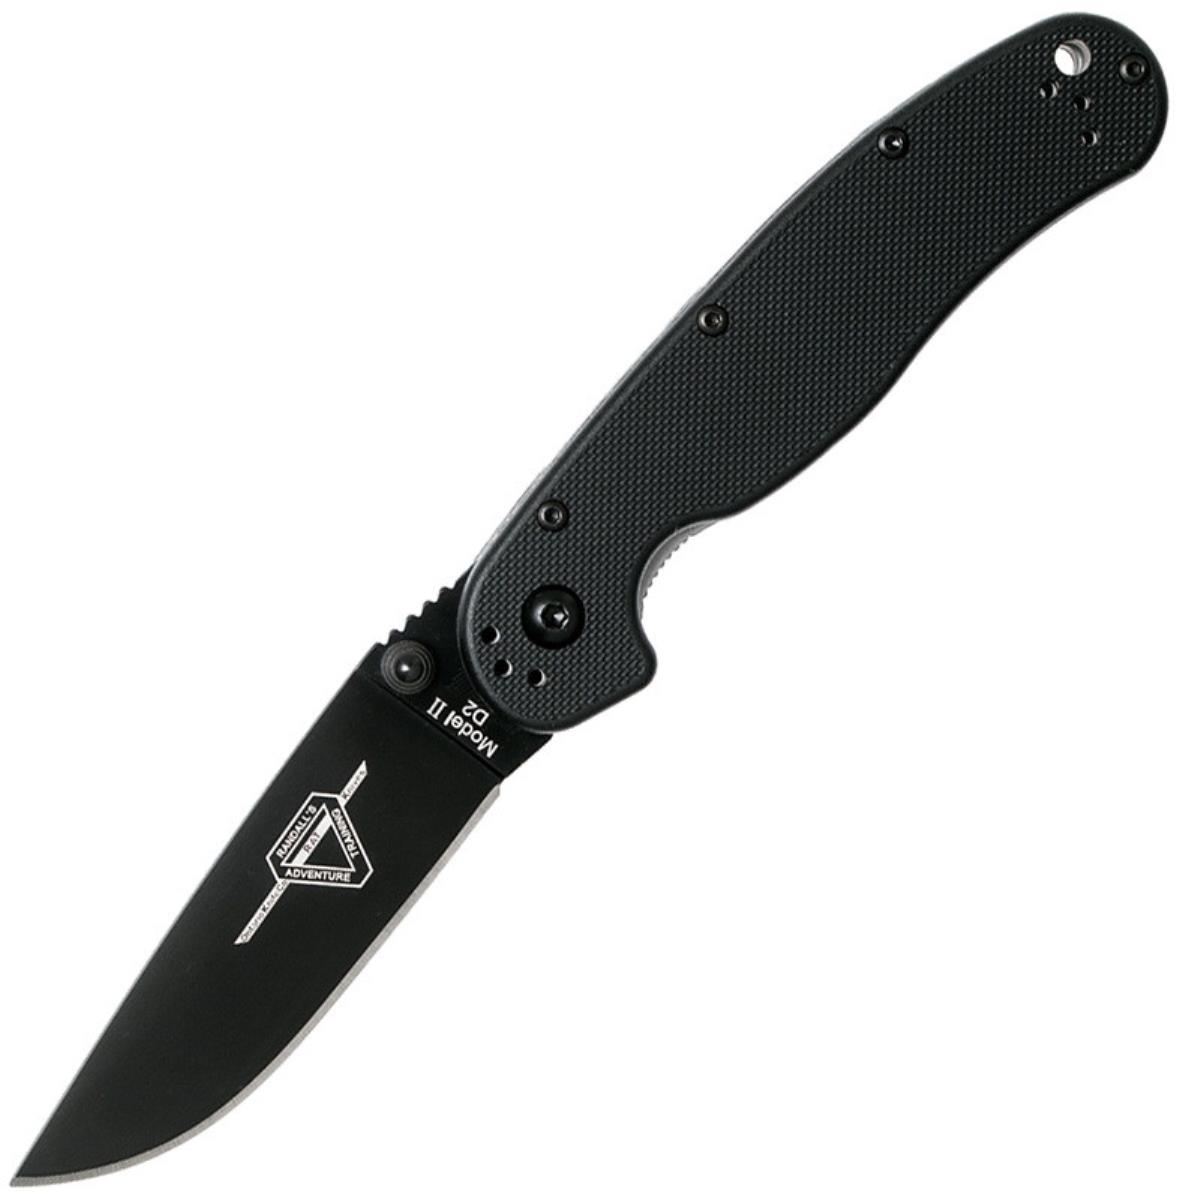 Нож RAT II складн.,чёрная нейлоновая рукоять, клинок AUS8 чёрное покрытие (8861)  ONTARIO полуавтоматический складной нож ontario rat 1a assisted black blade desert tan g 10 handle